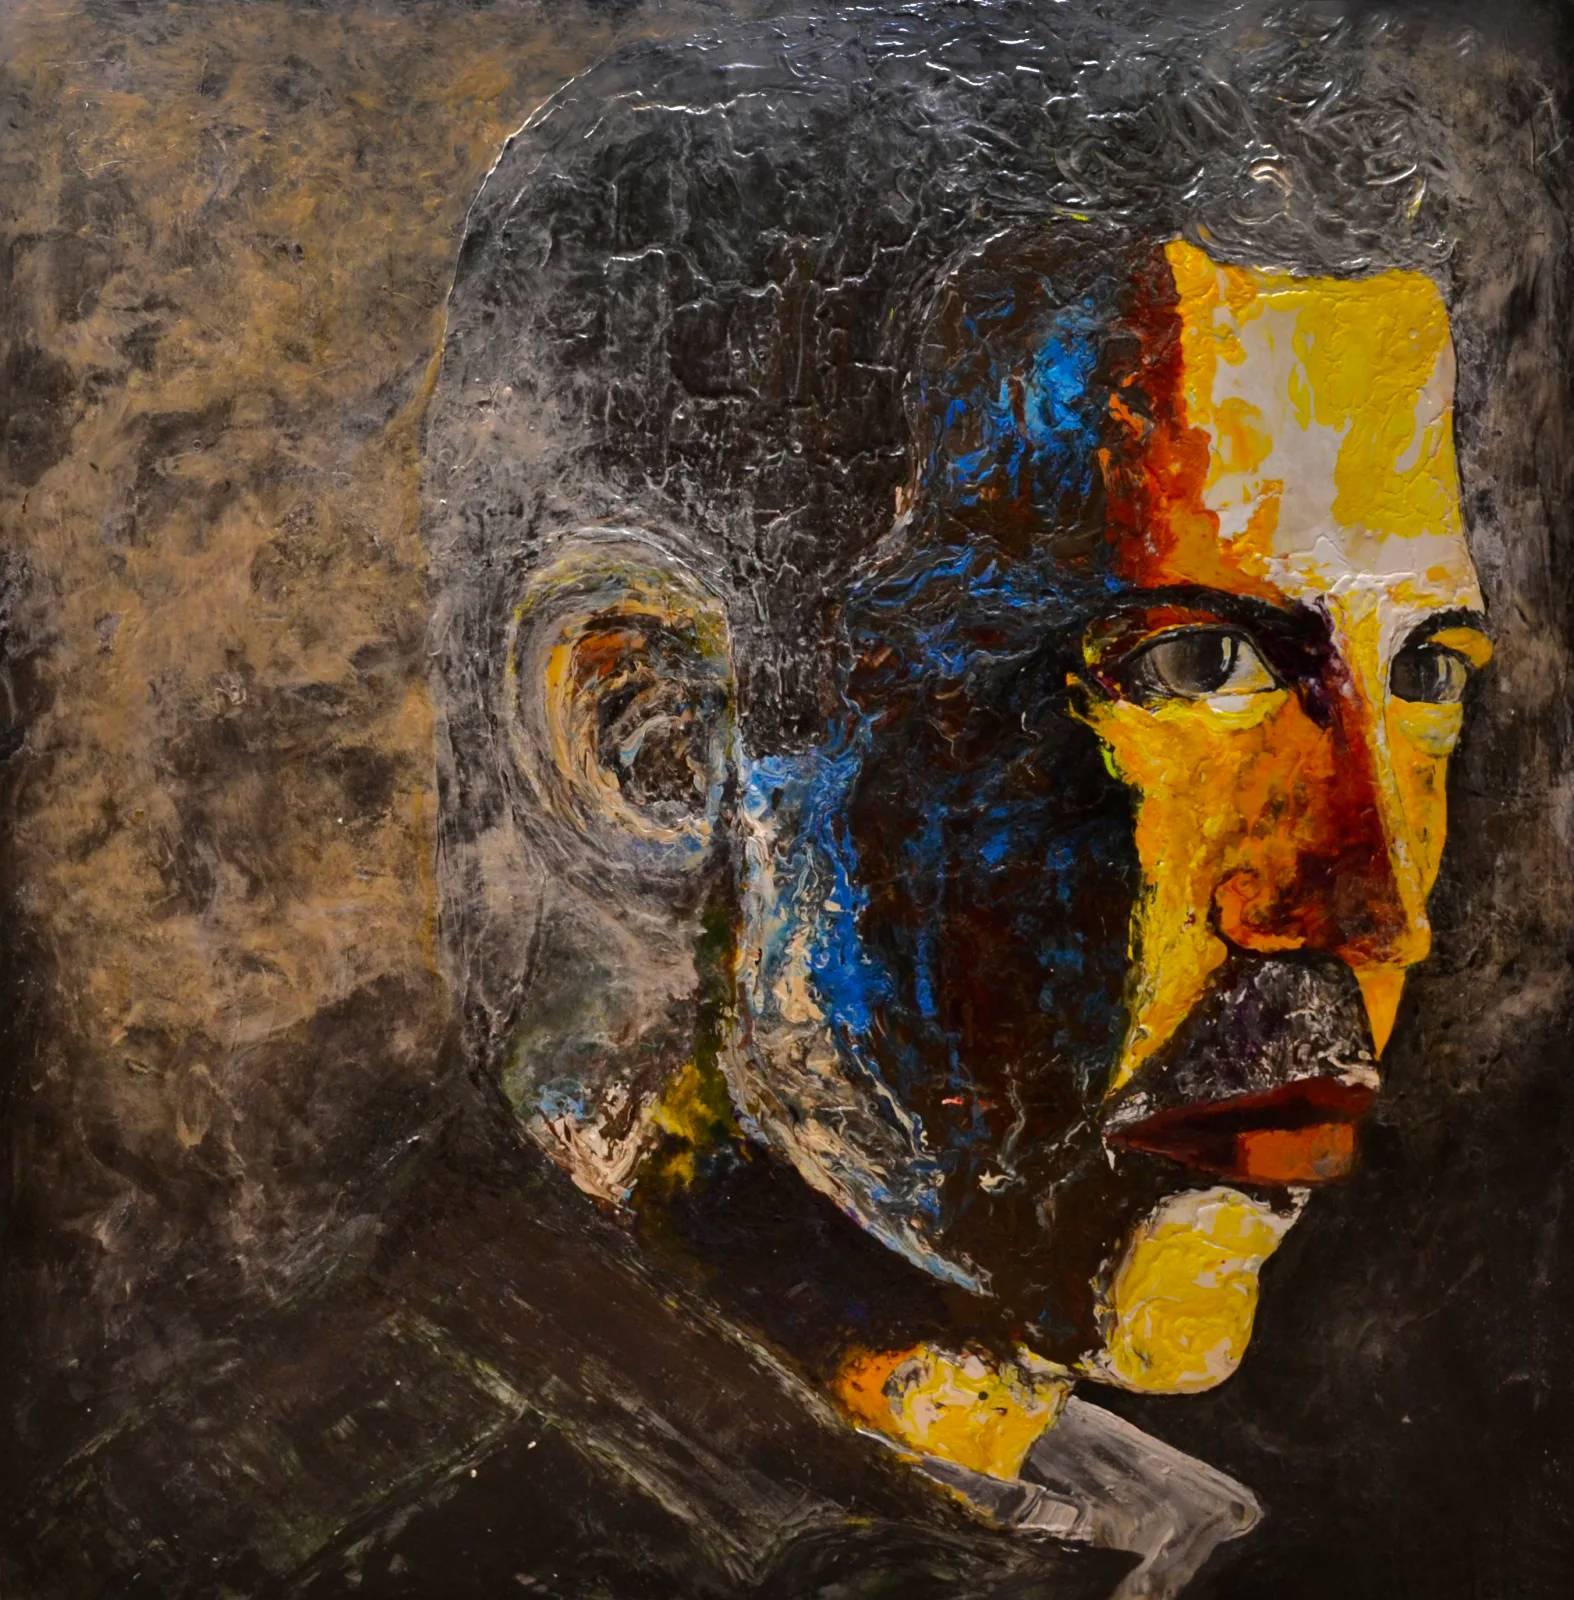 In Haleh Mashians Werk "Awaken 3" fängt die Künstlerin das Gesicht eines Mannes ein, der die allgegenwärtige Wolke des Vergessens und der Ablenkung, die viele in der heutigen Gesellschaft plagt, überwunden zu haben scheint. Die warmen Gelbtöne, die